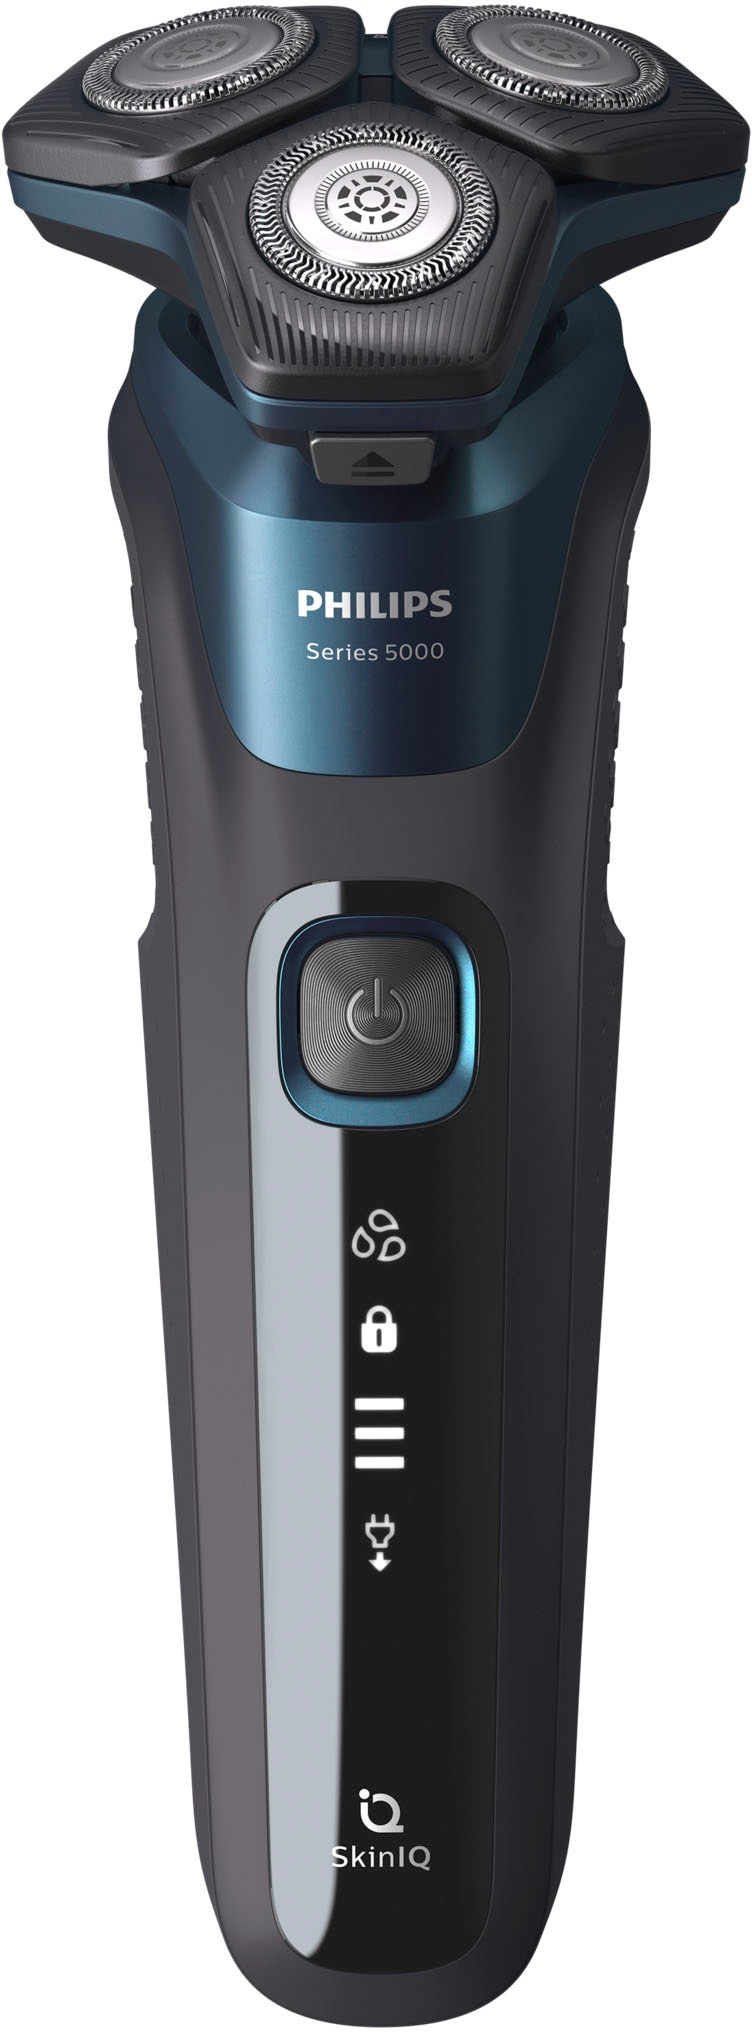 »Series 5000 SkinIQ OTTO Technologie S5579/50«, Langhaarschneider, ausklappbarer mit Philips kaufen bei Reinigungsstation, Elektrorasierer